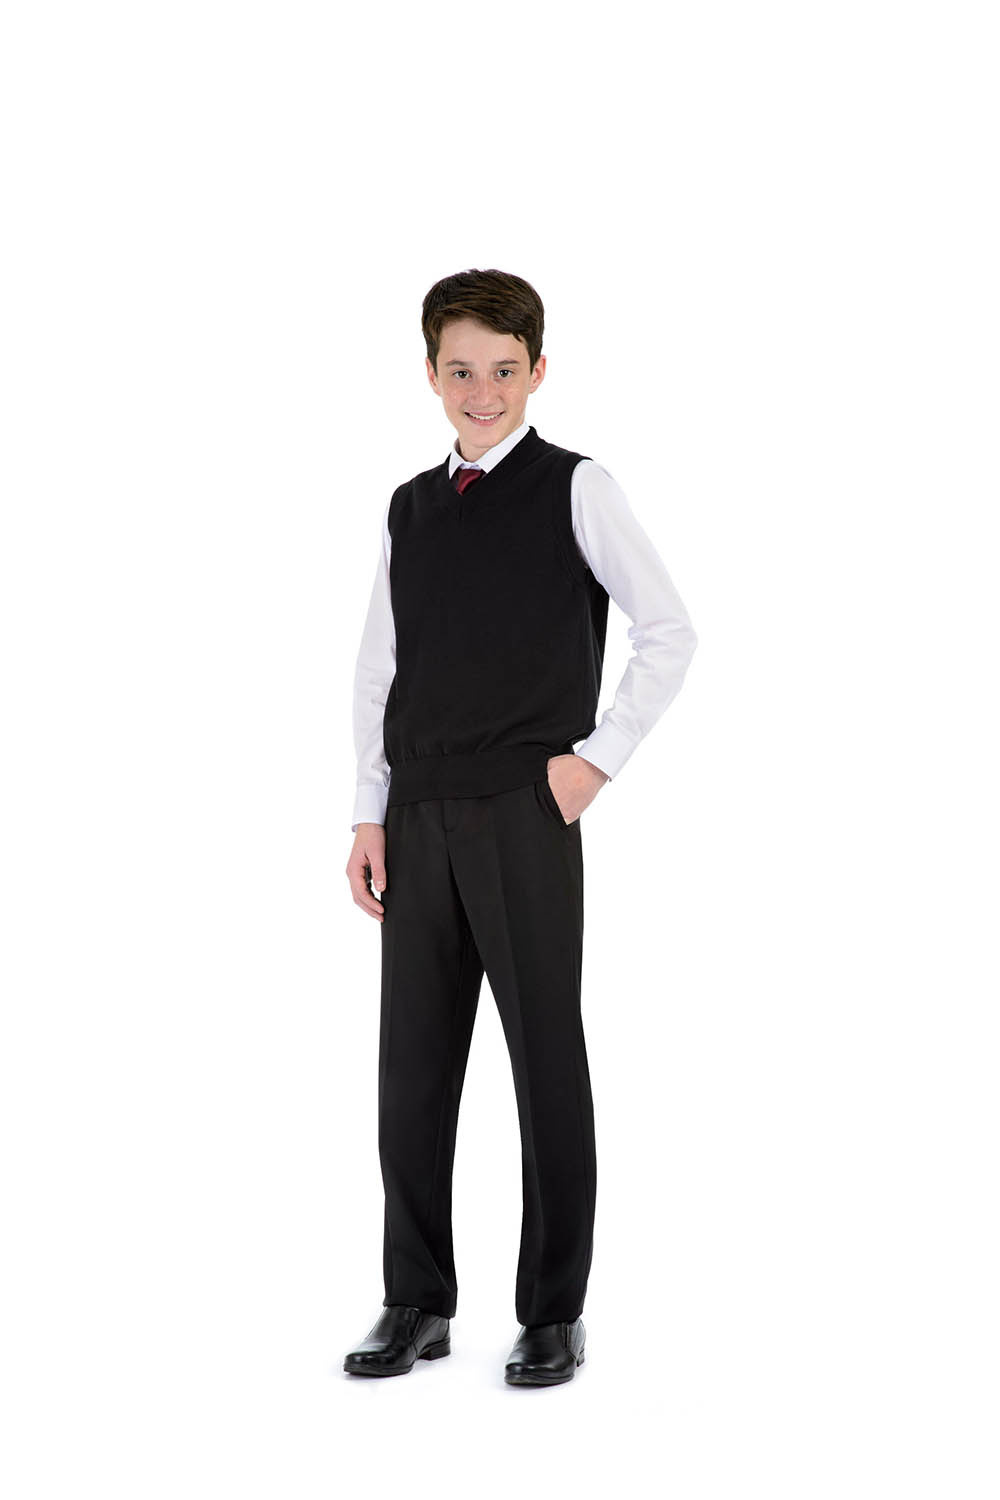 Классические черные брюки с четкой стрелкой в сочетании с белой сорочкой и трикотажным жилетом — деловой и очень комфортный образ. Брюки <price>1700 руб.</price>, сорочка от <price>490 руб.</price>, галстук <price>290 руб.</price> (5–8-й классы).